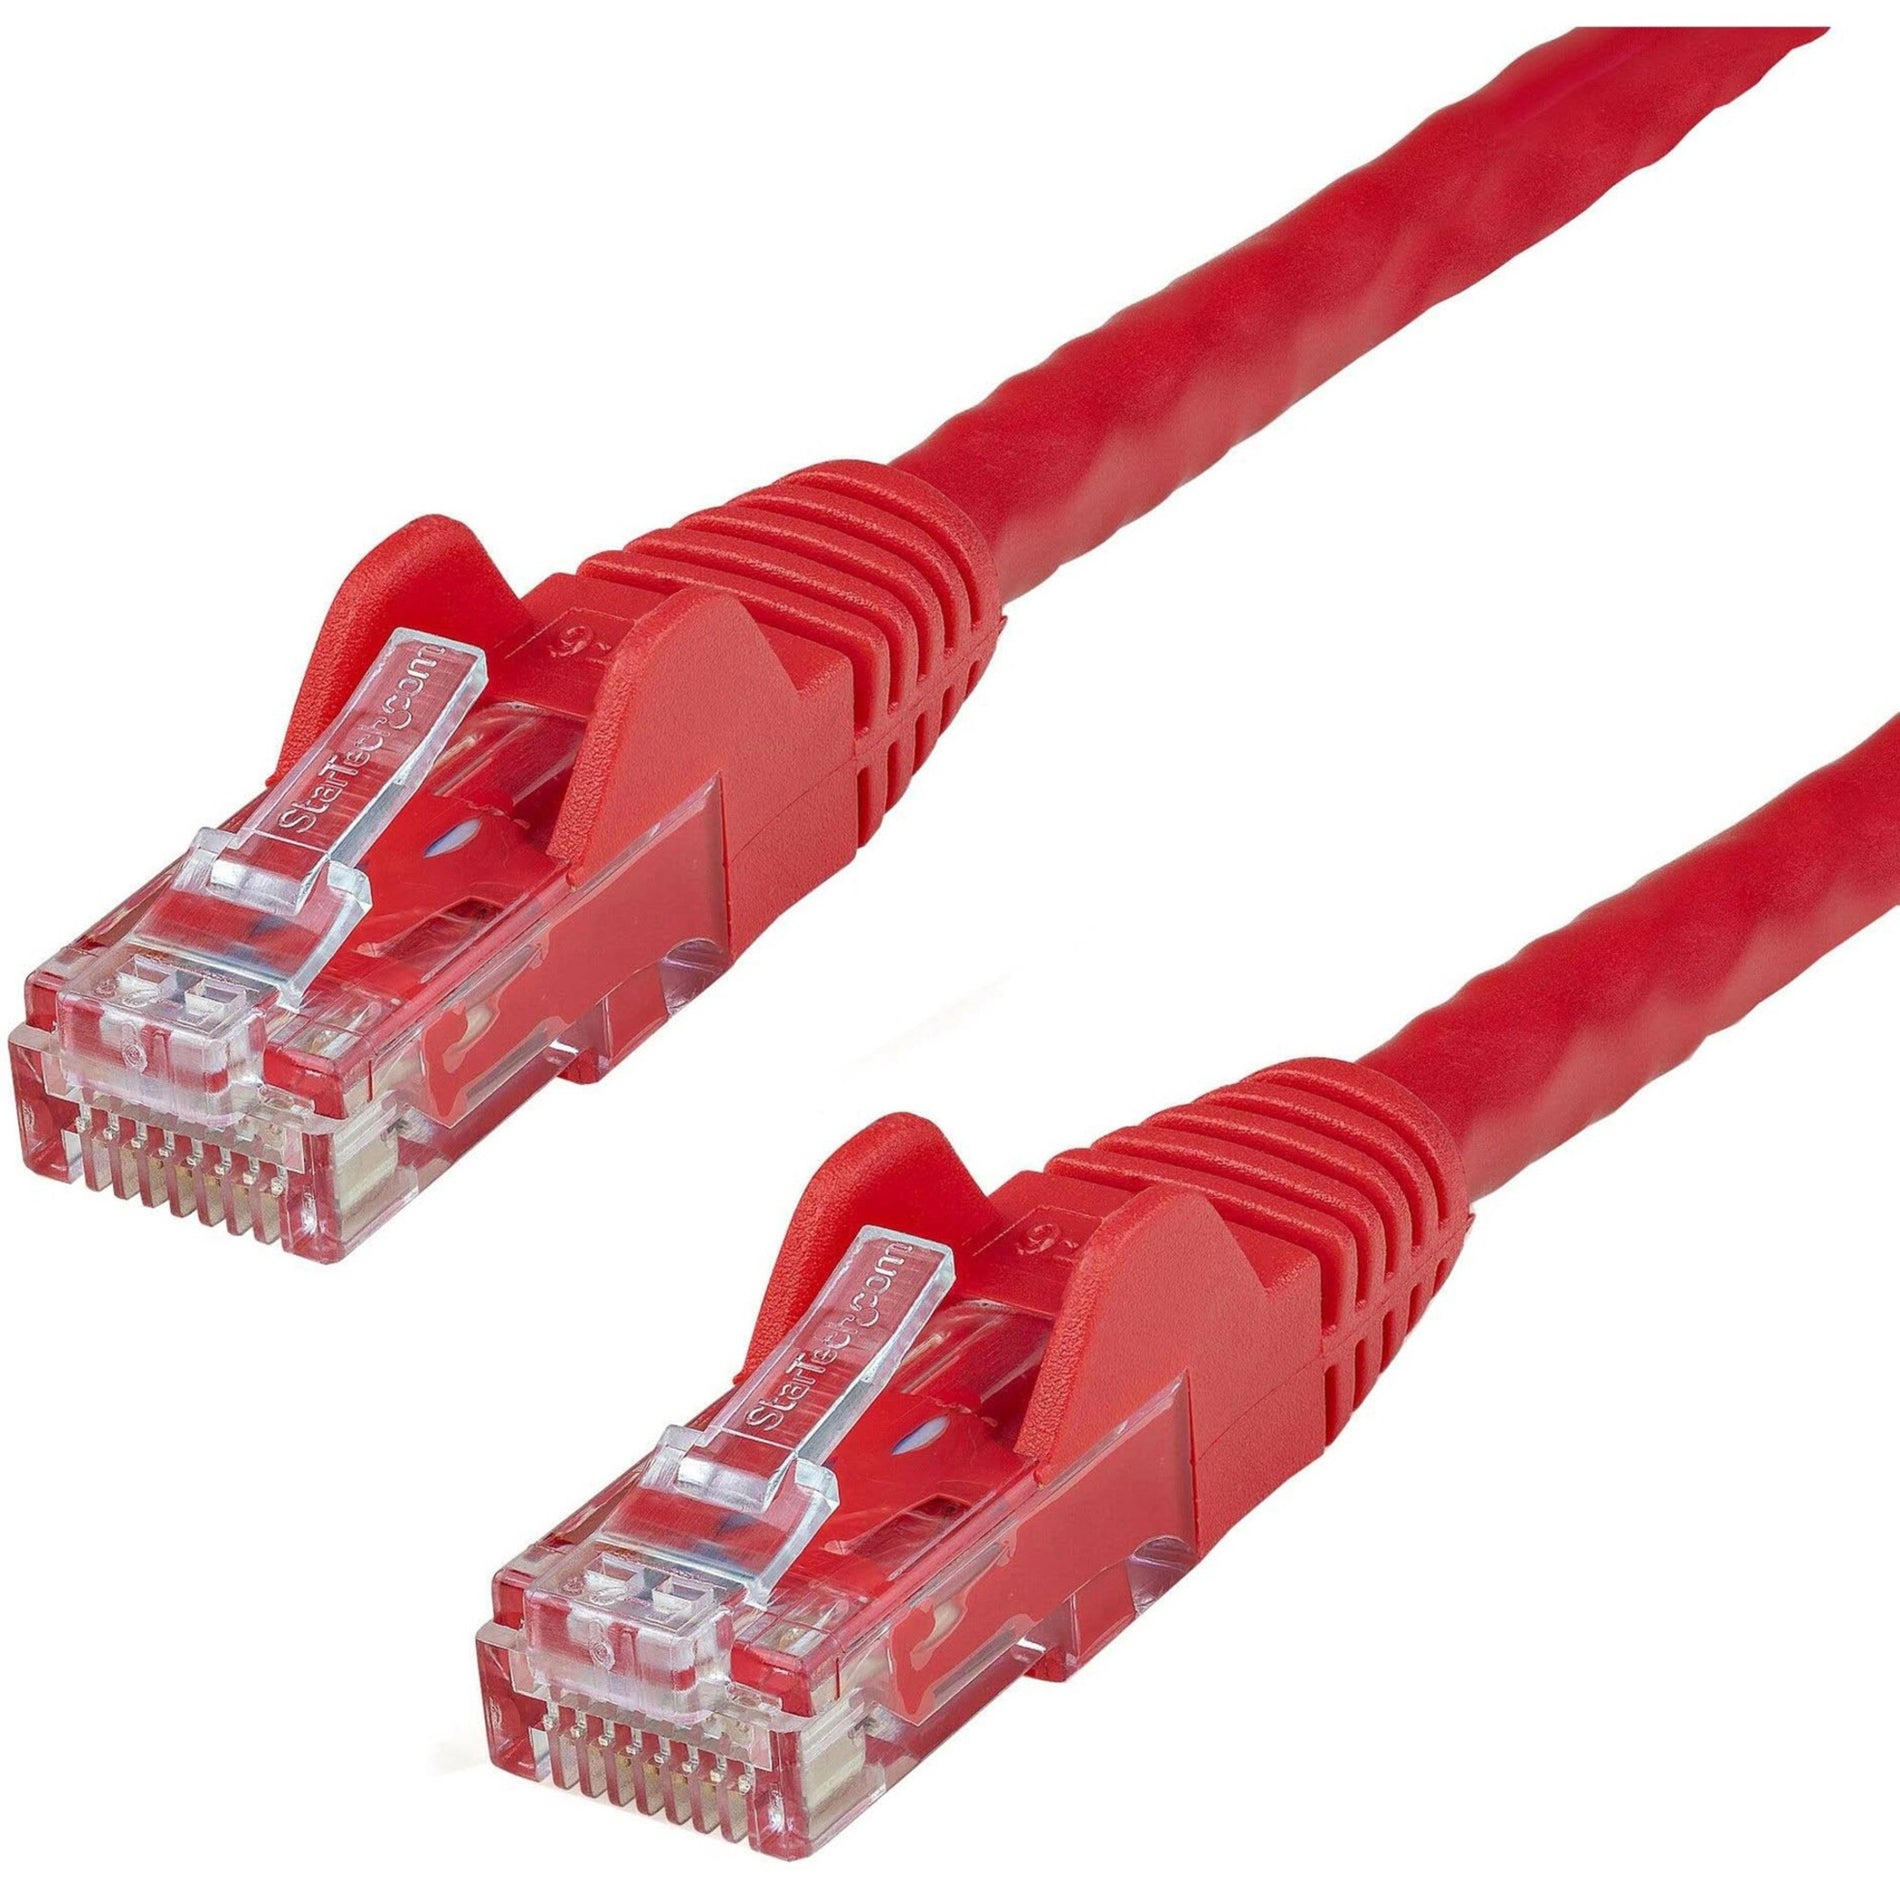 كابل الشبكة Cat. 6 من StarTech.com N6PATCH20RD ، كابل إيثرنت أحمر بطول 20 قدمًا ، موصلات RJ45 غير قابلة للانغلاق